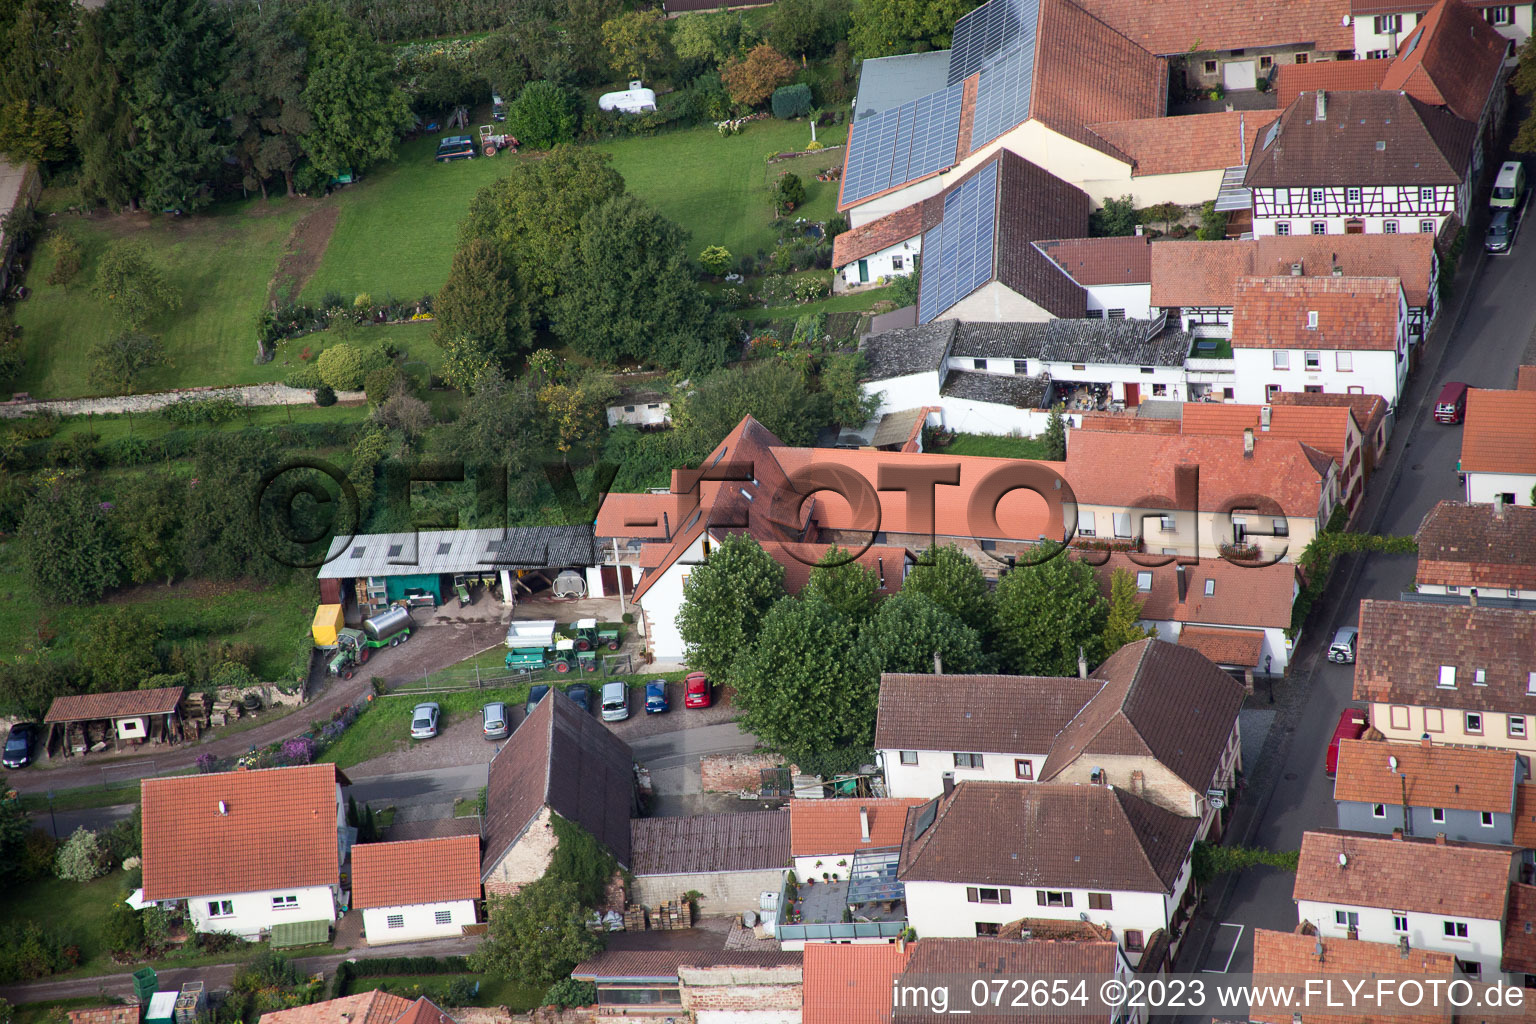 Aerial photograpy of District Heuchelheim in Heuchelheim-Klingen in the state Rhineland-Palatinate, Germany